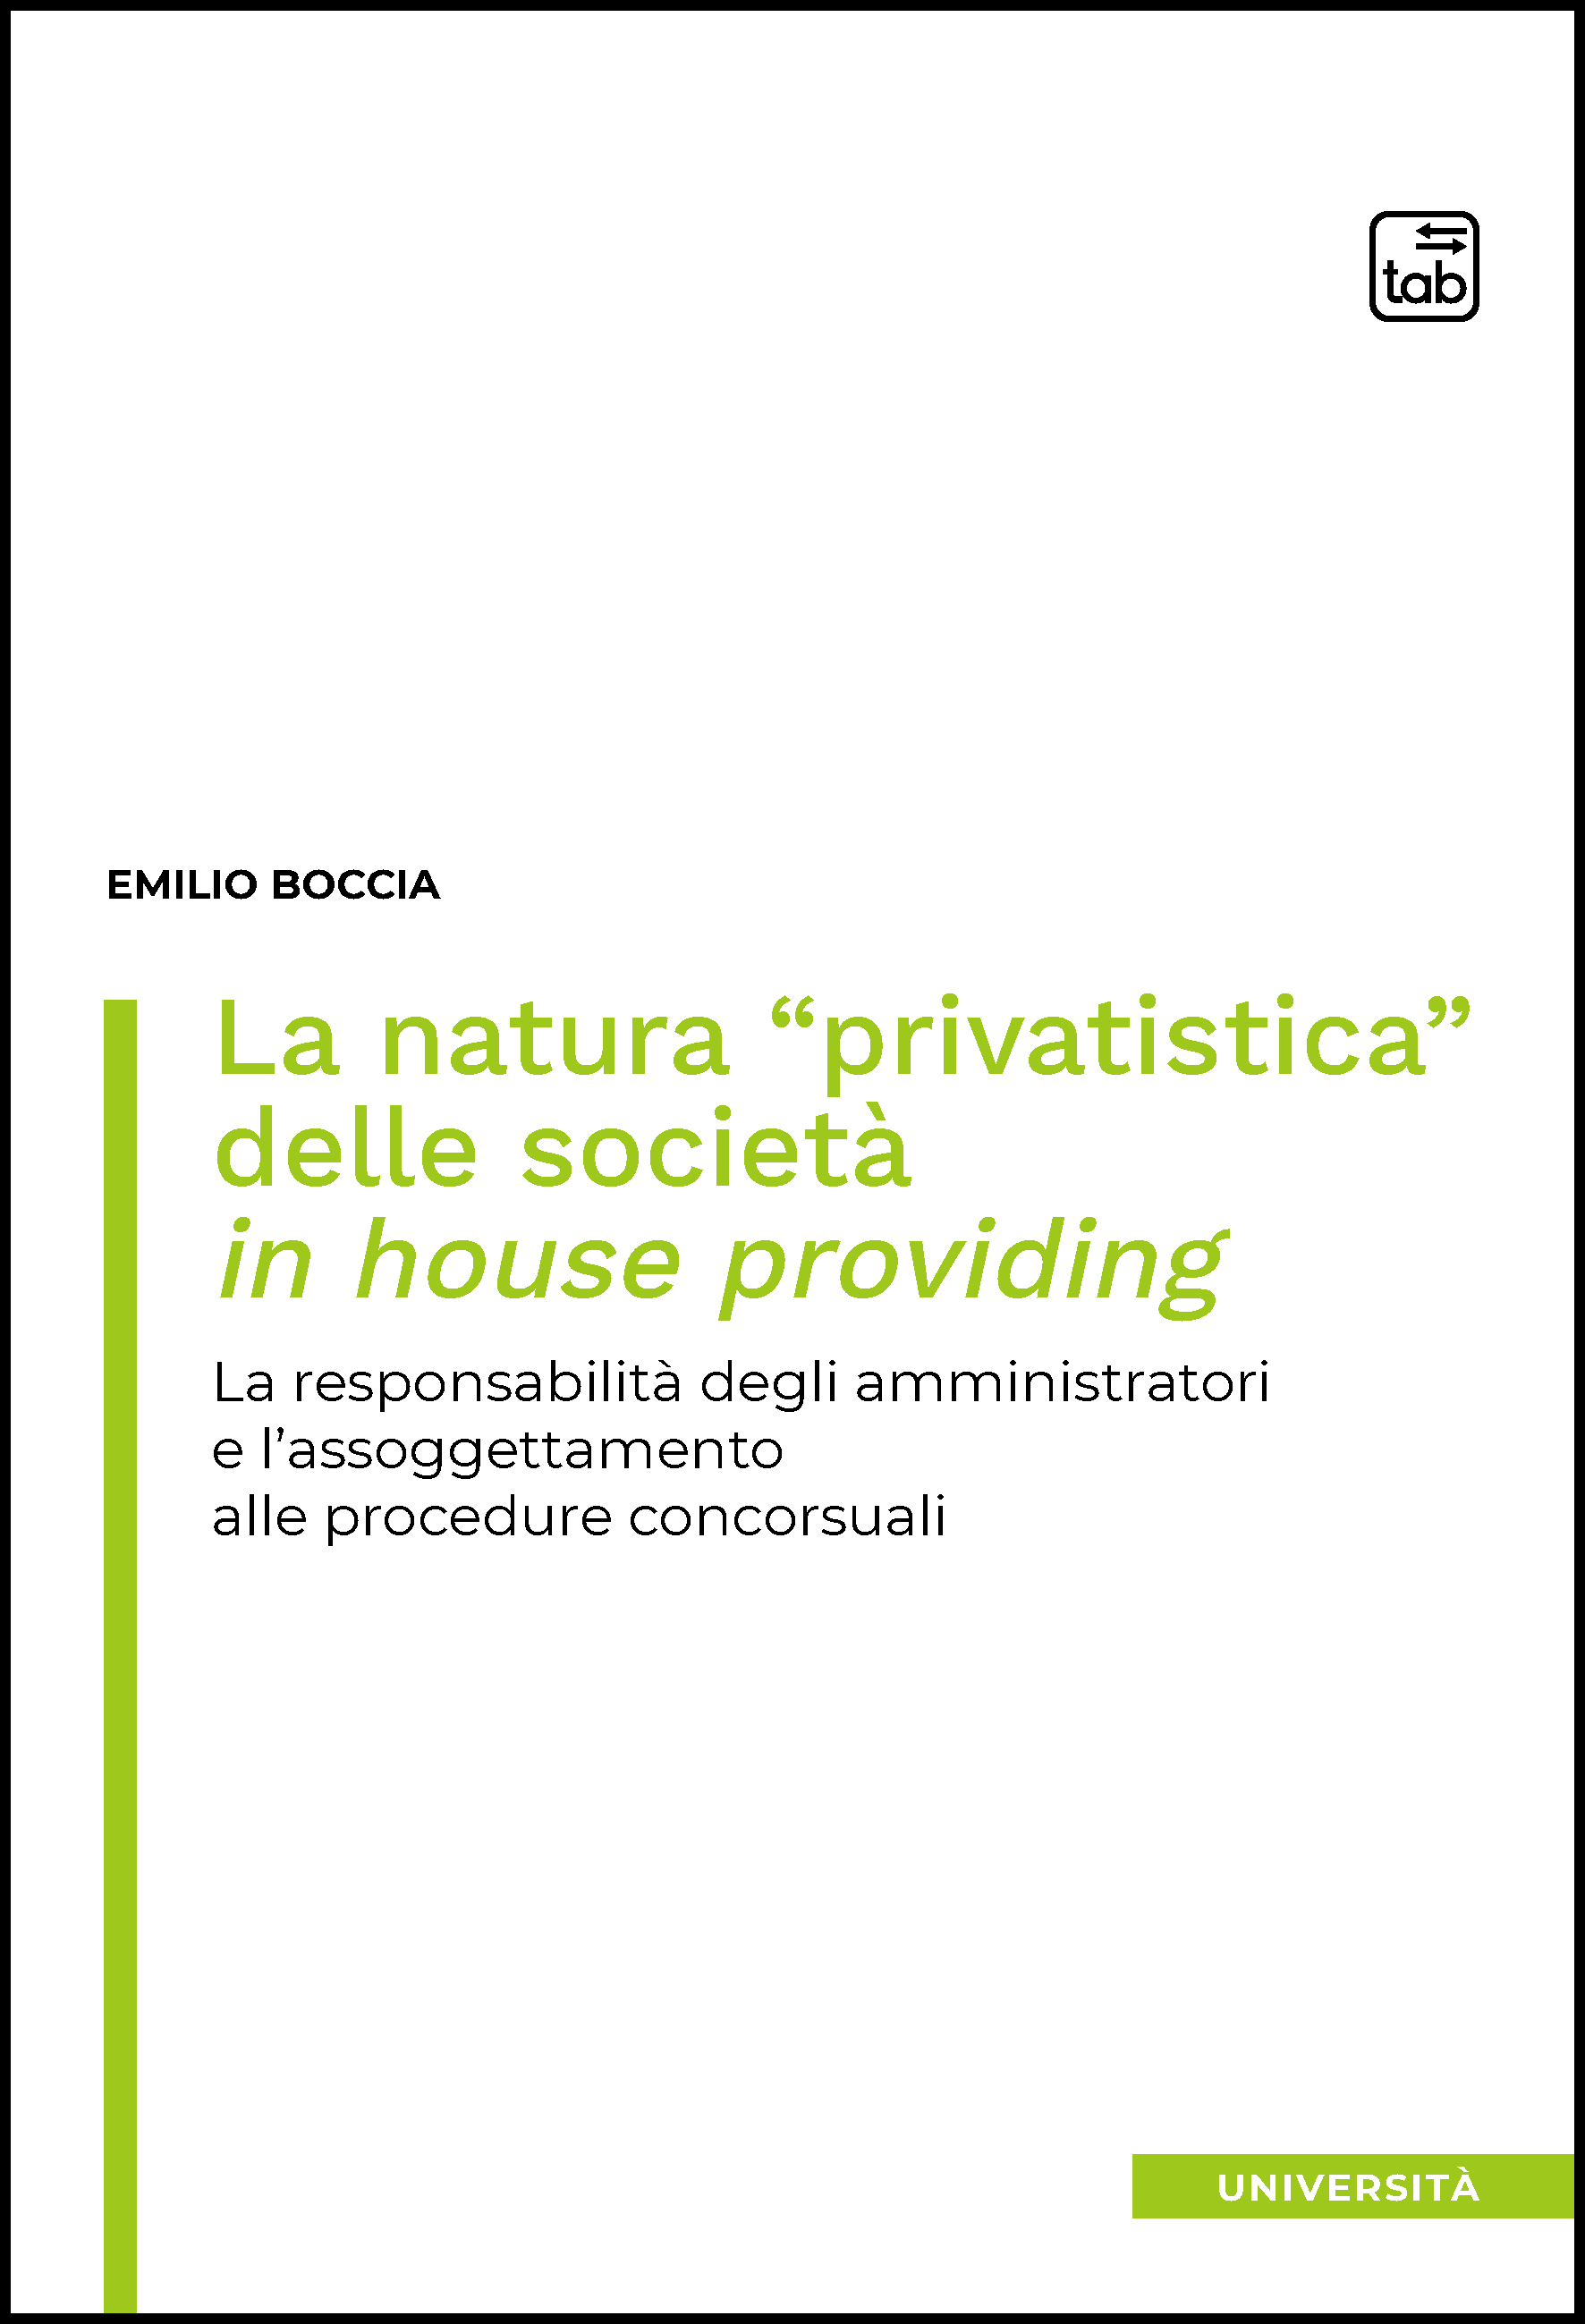 La natura “privatistica” delle società in house providing